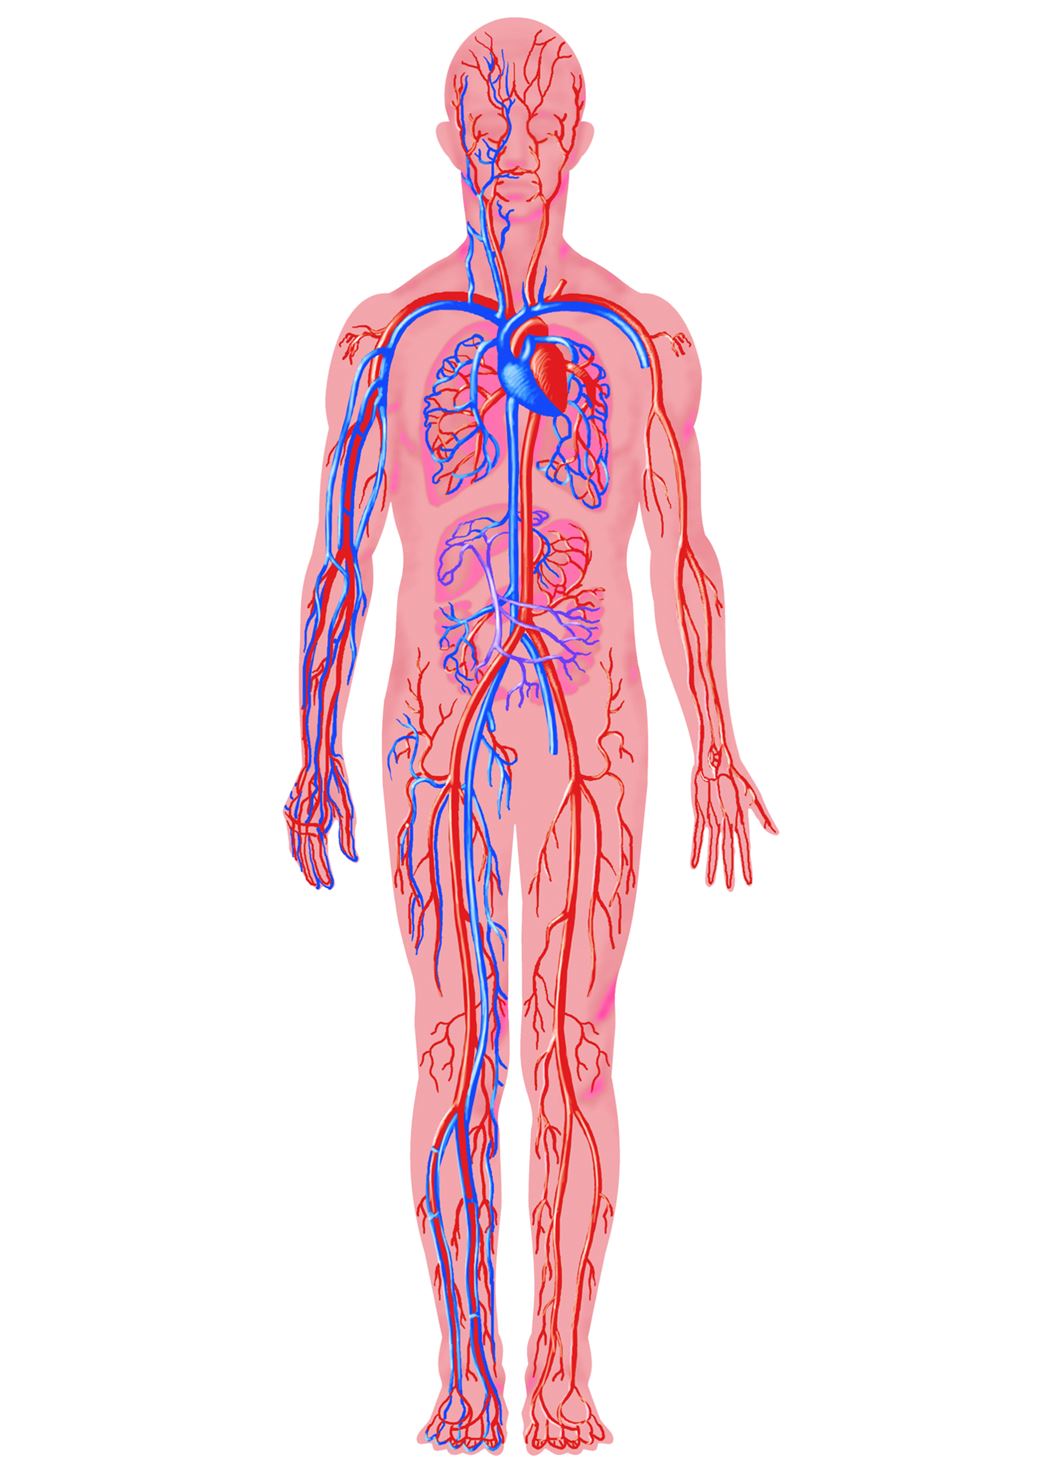 Воды сосуды человека. Кровеносная система организма человека. Кровеносная система человека кровеносная. Циркуляторная система человека анатомия. Кровеносная система человека анатомия.